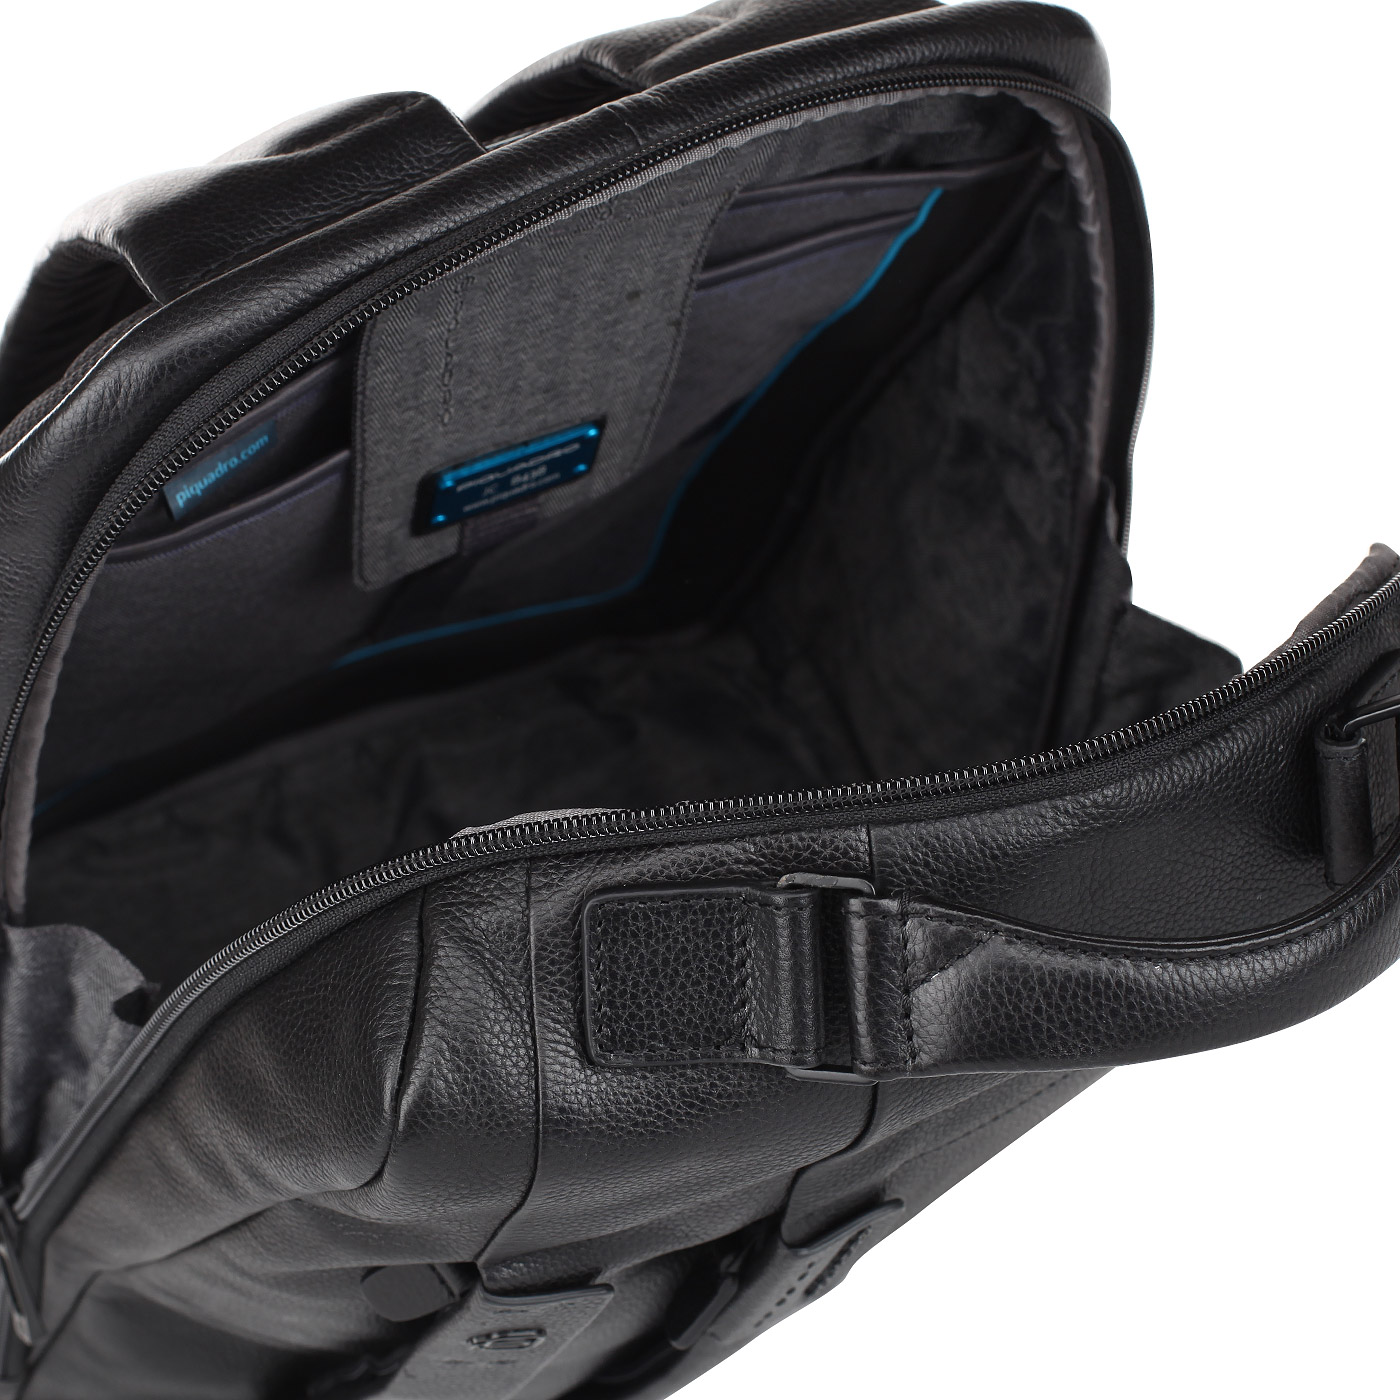 Мужской кожаный рюкзак с отделением для ноутбука Piquadro Plus